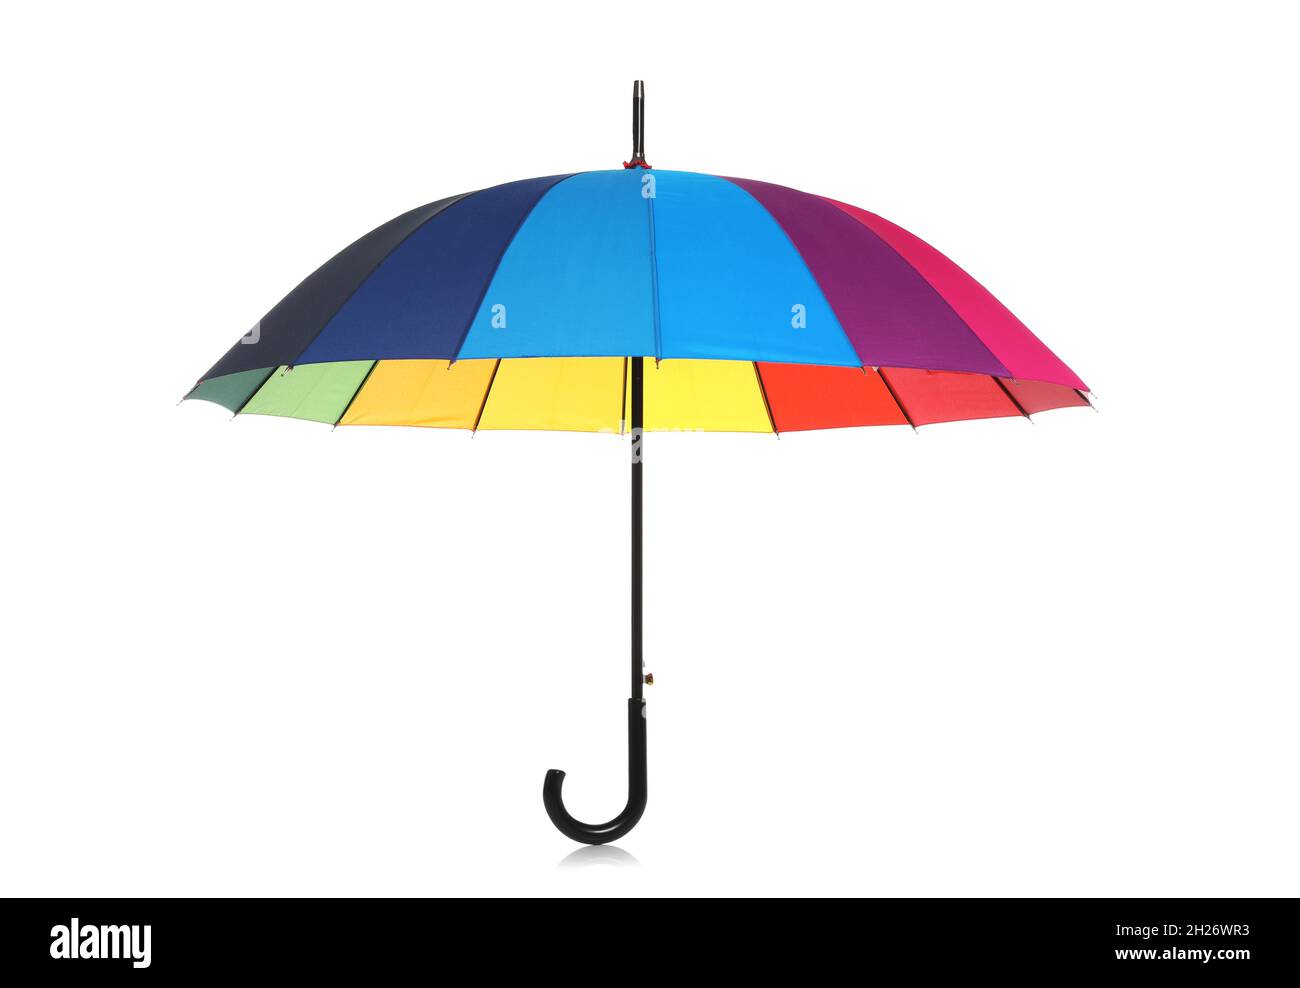 Magnifique parapluie ouvert sur fond blanc Photo Stock - Alamy